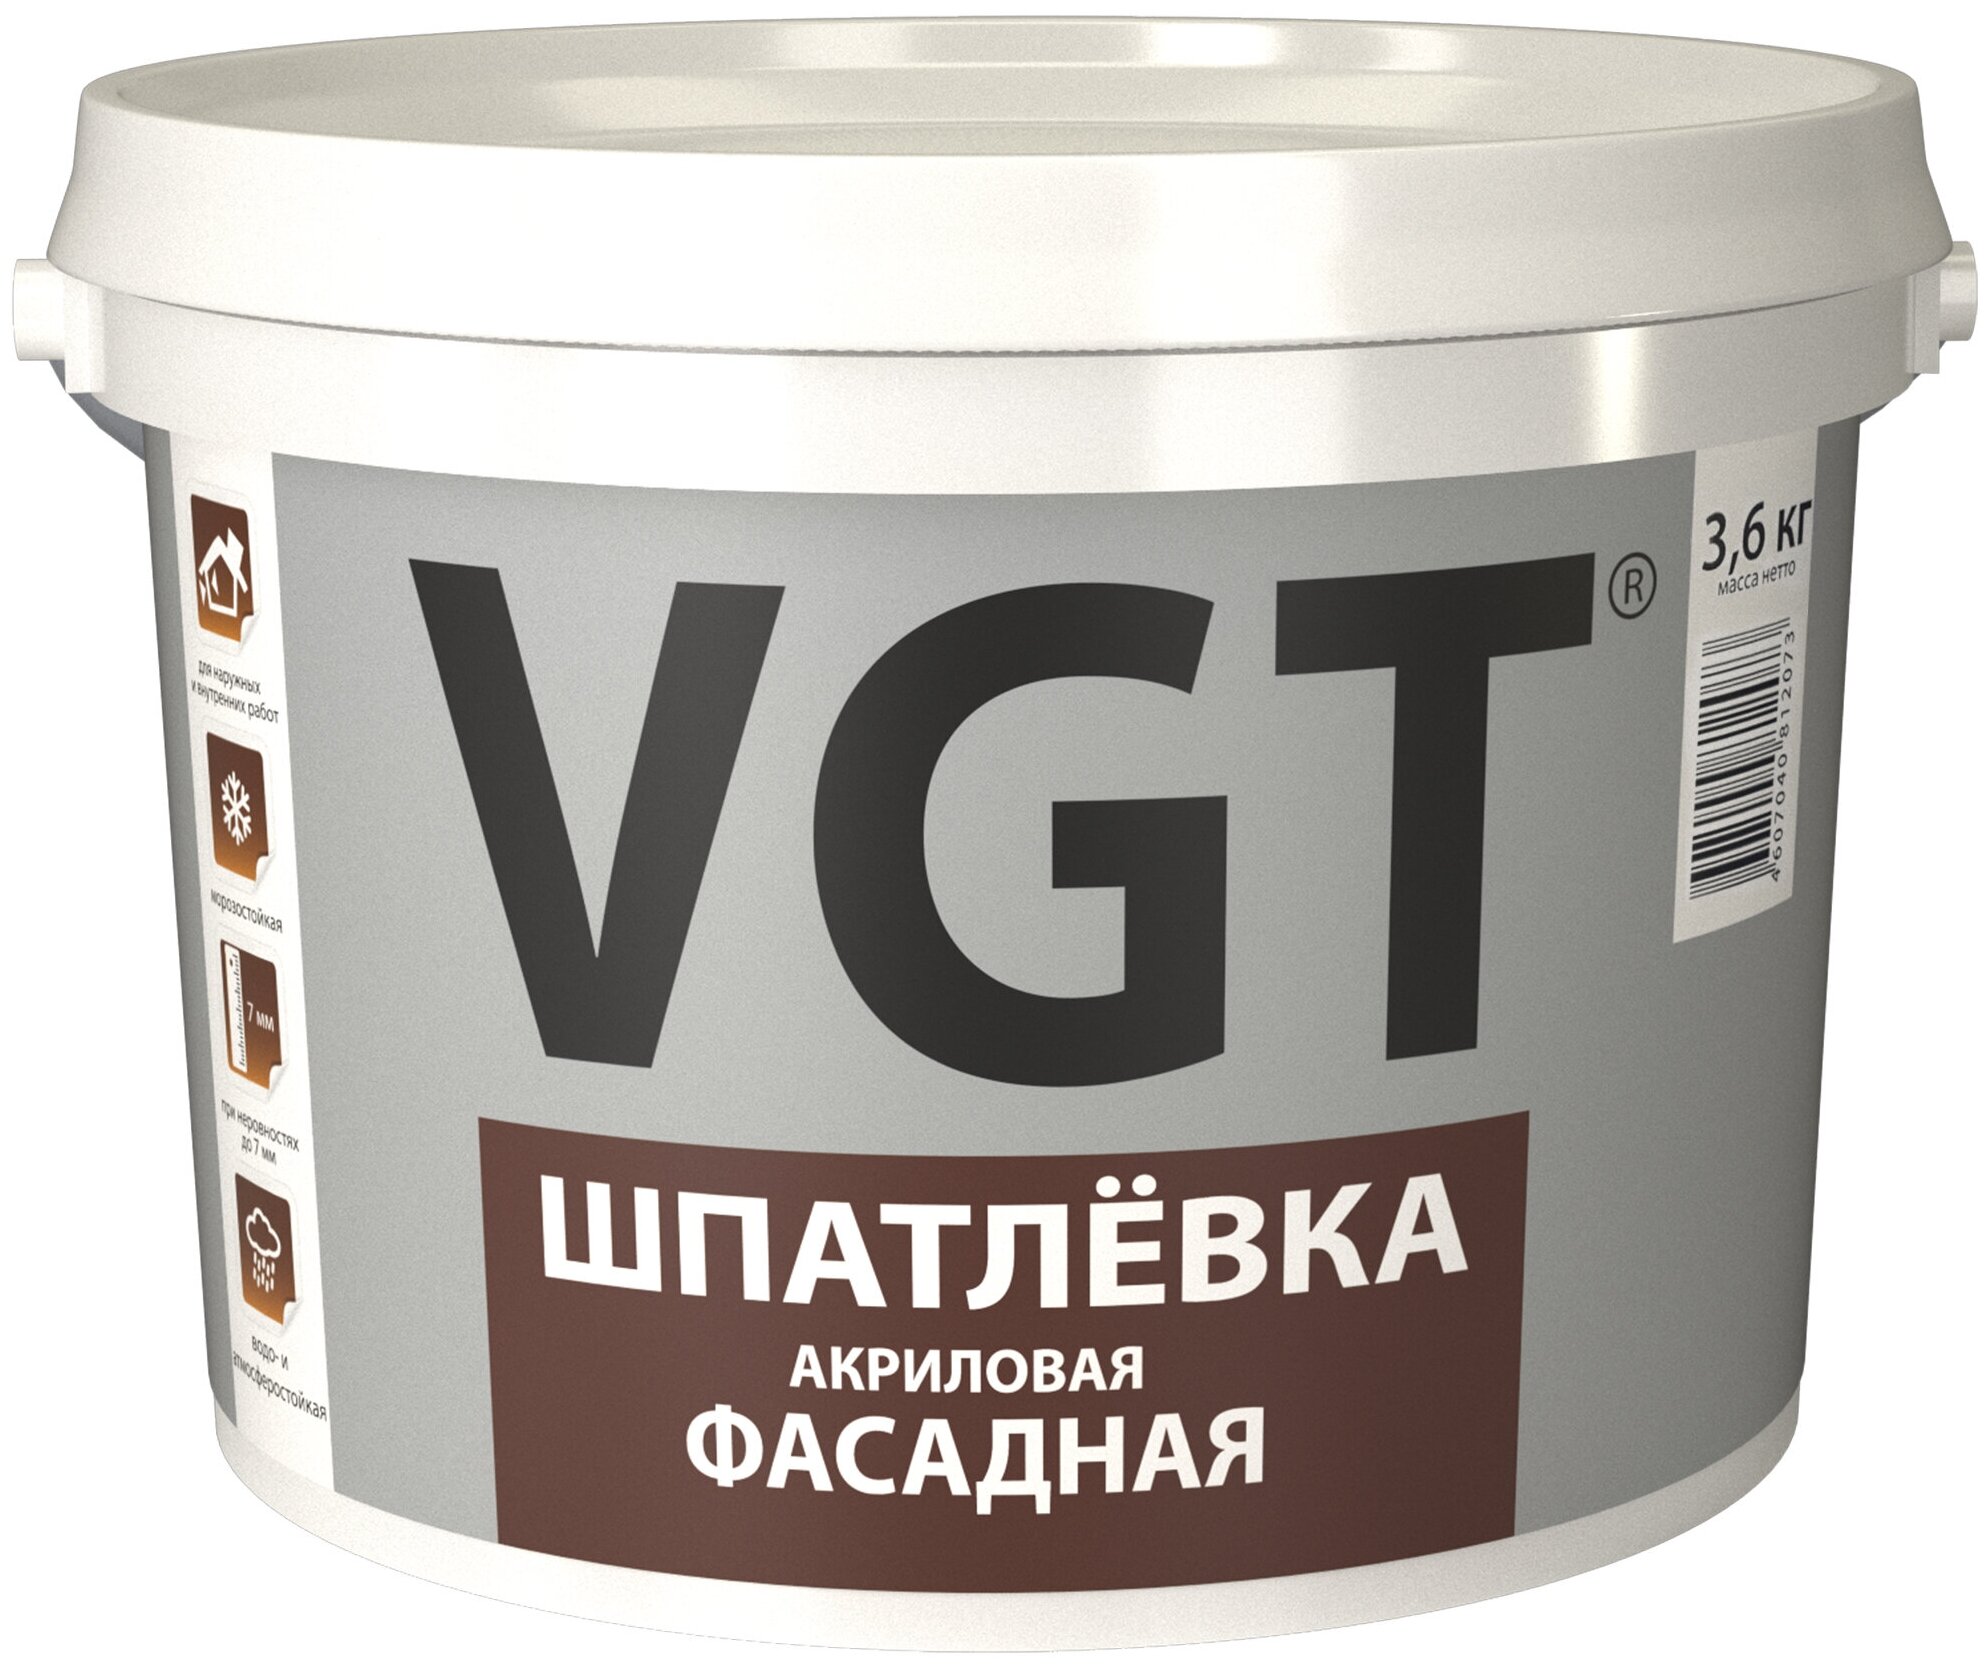 Шпатлевка акриловая фасадная VGT (3,6кг)